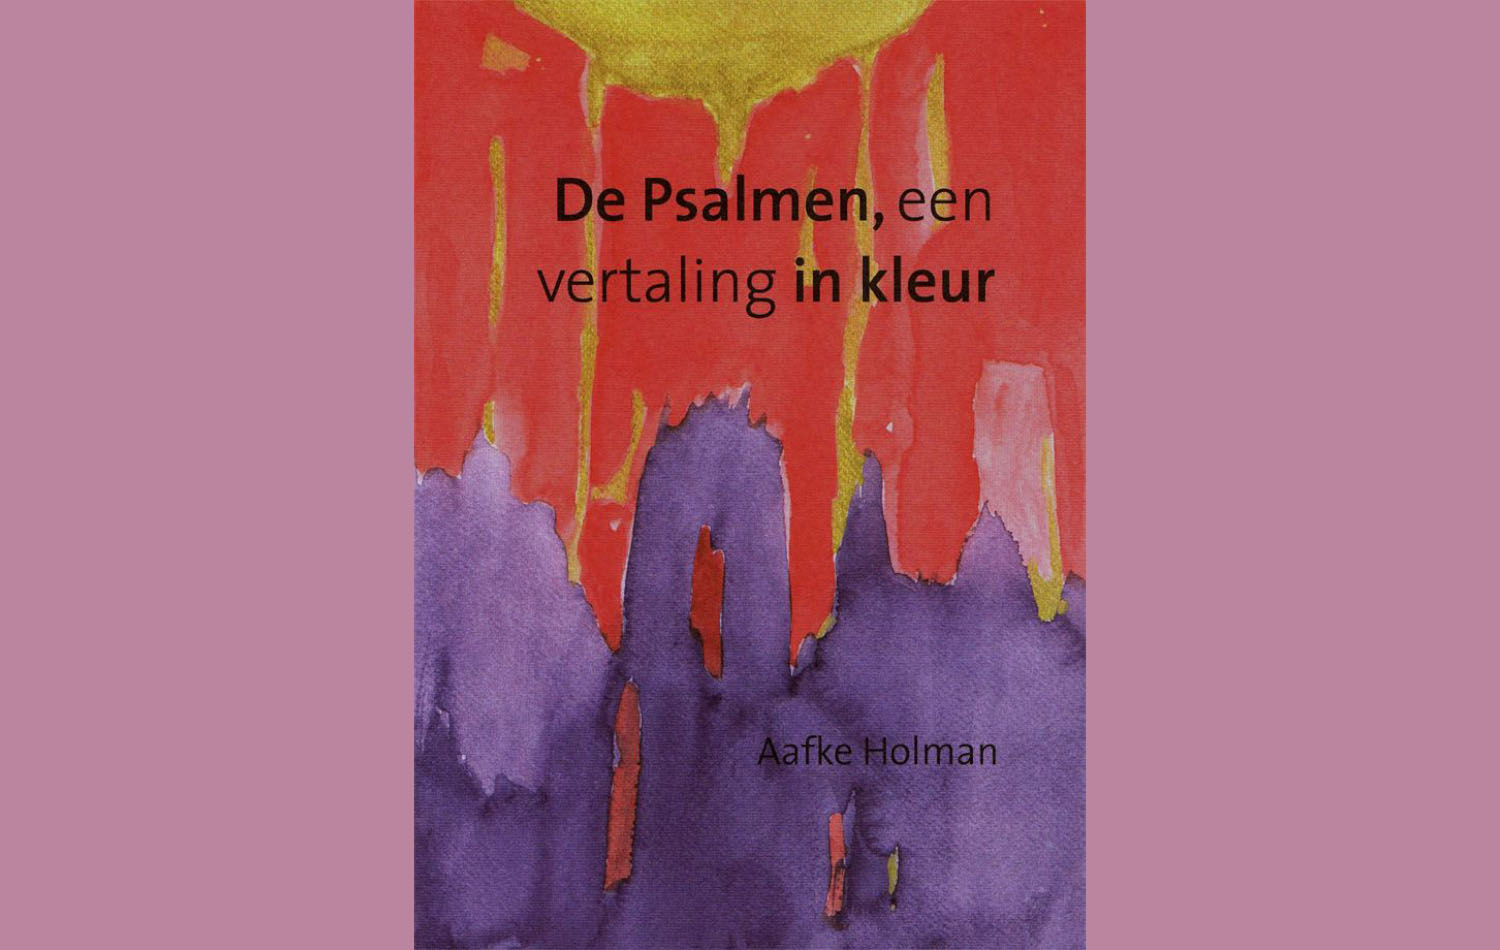 boekkaft van de psalmen in kleur ©Aafke Holman